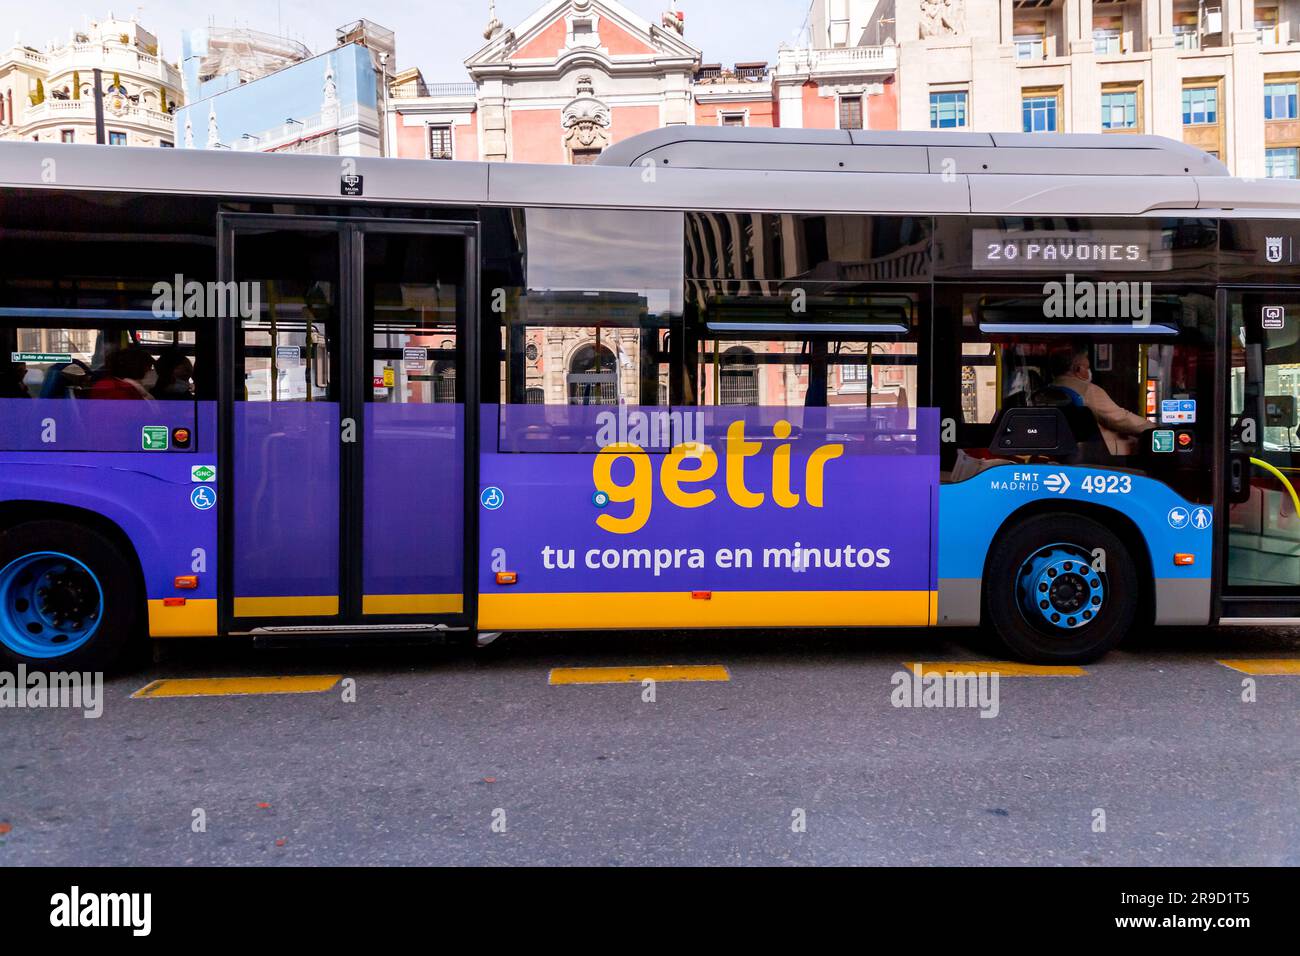 Madrid, Espagne - 10 FÉVRIER 2022: Publicité extérieure de Getir sur un bus public à Madrid. Getir est une application de livraison pour l'alimentation, la nourriture, etc. Basée dans ISTA Banque D'Images